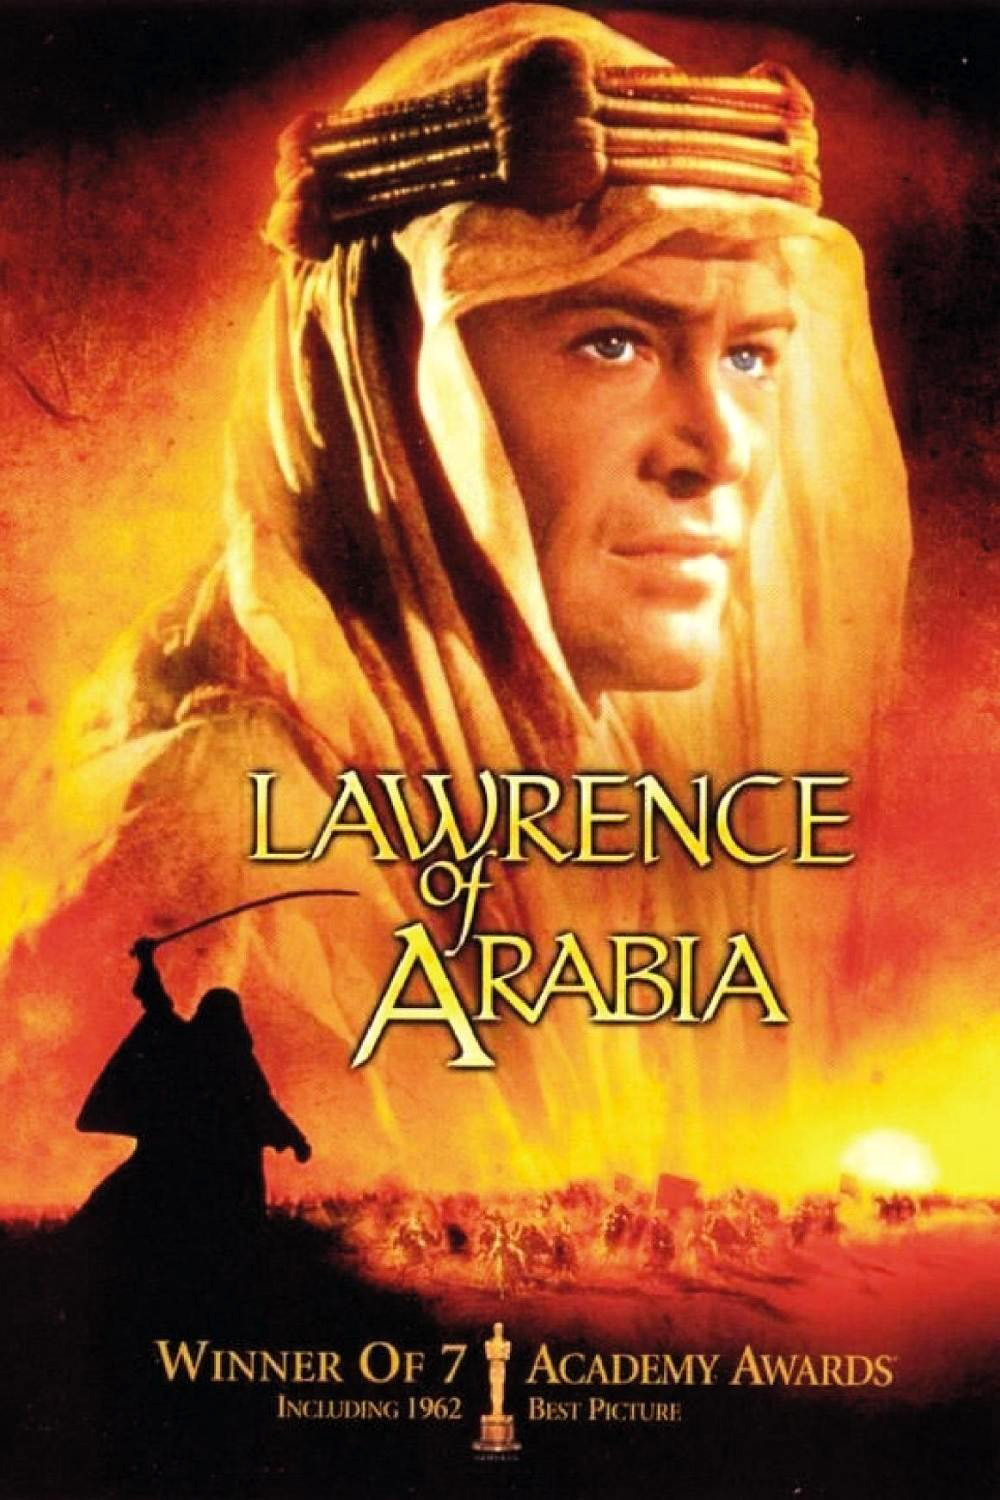 阿拉伯的劳伦斯/沙漠枭雄 Lawrence.of.Arabia.1962.DISC1.2160p.BluRay.HEVC.TrueHD.7.1.Atmos-CCCV1 77.98GB-1.jpeg